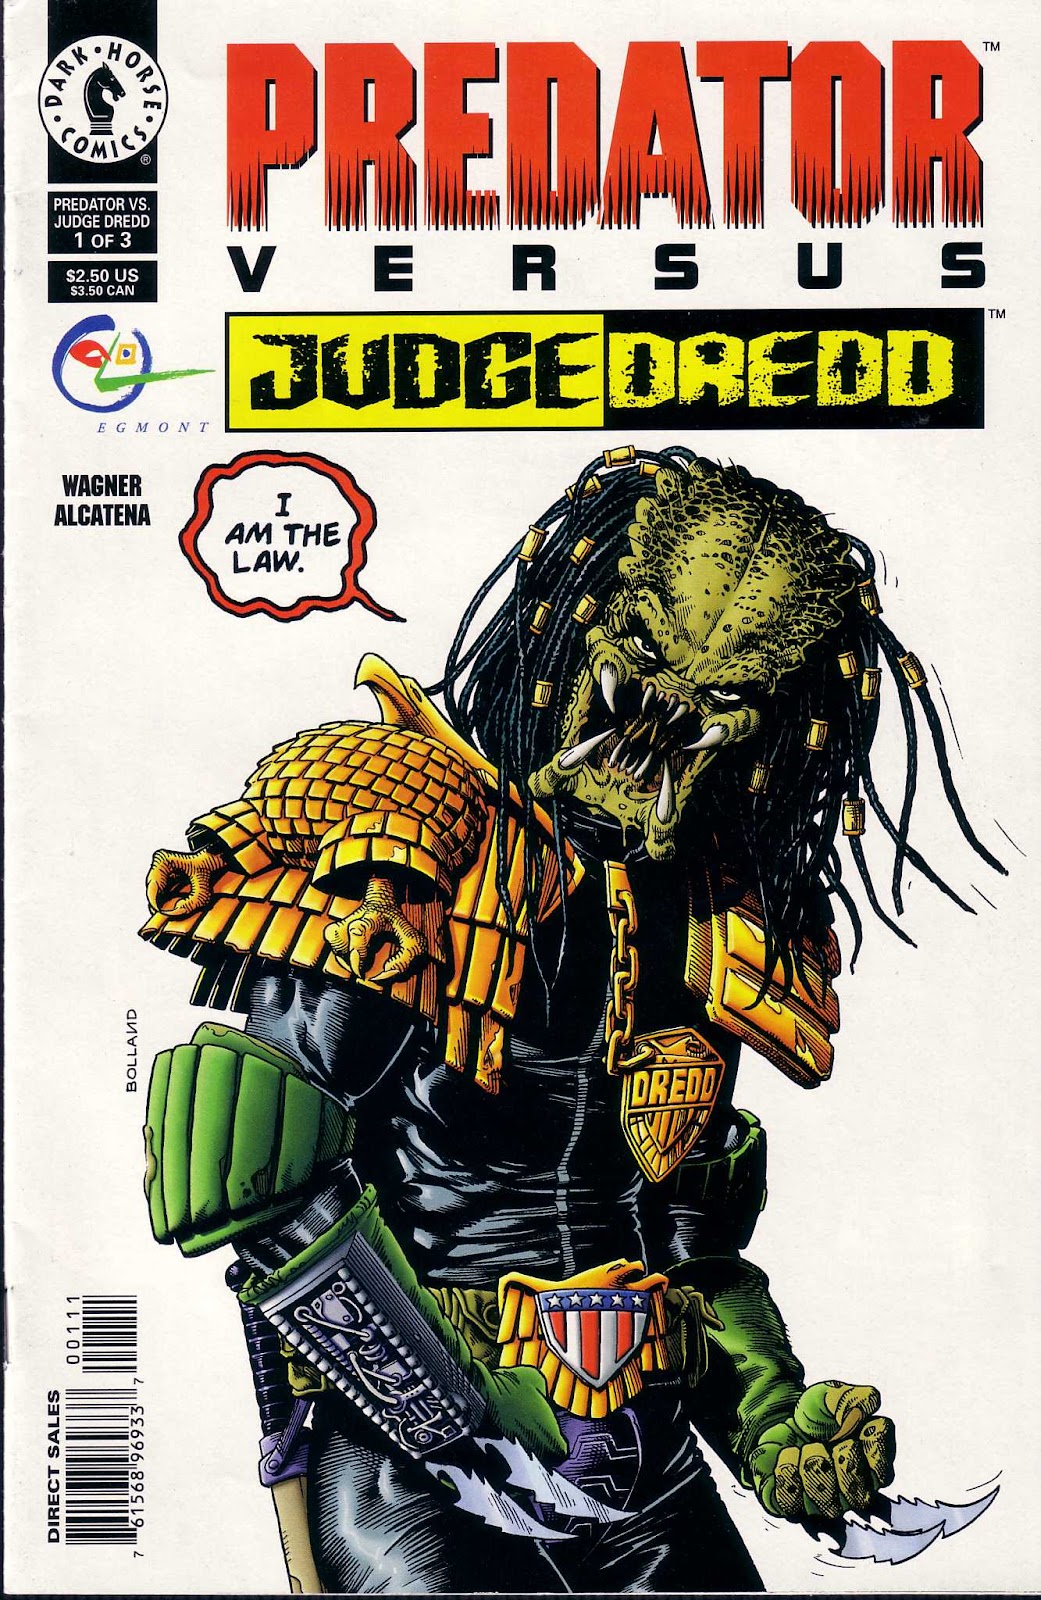 Predator Versus Judge Dredd issue 1 - Page 1